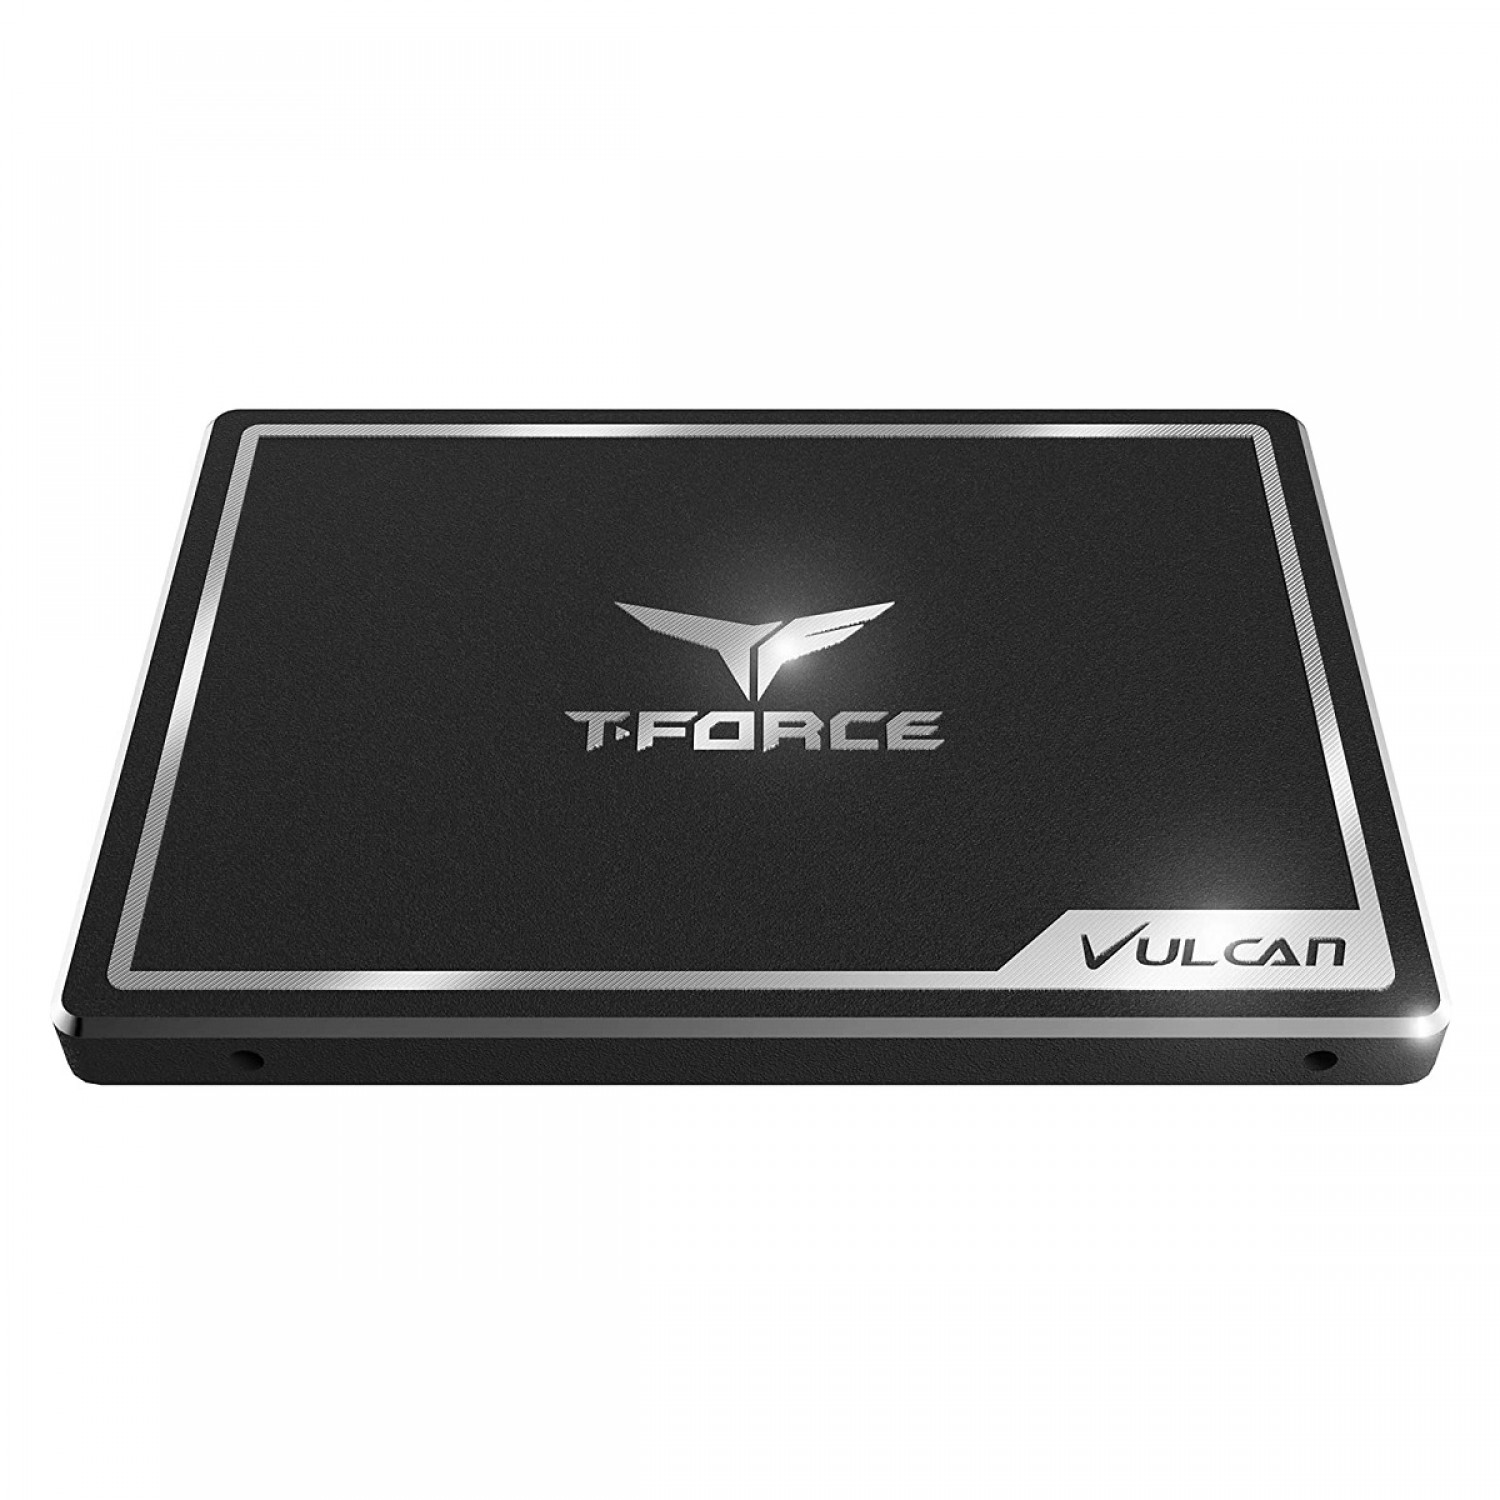 حافظه اس اس دی TeamGroup T-Force Vulcan 500GB-3